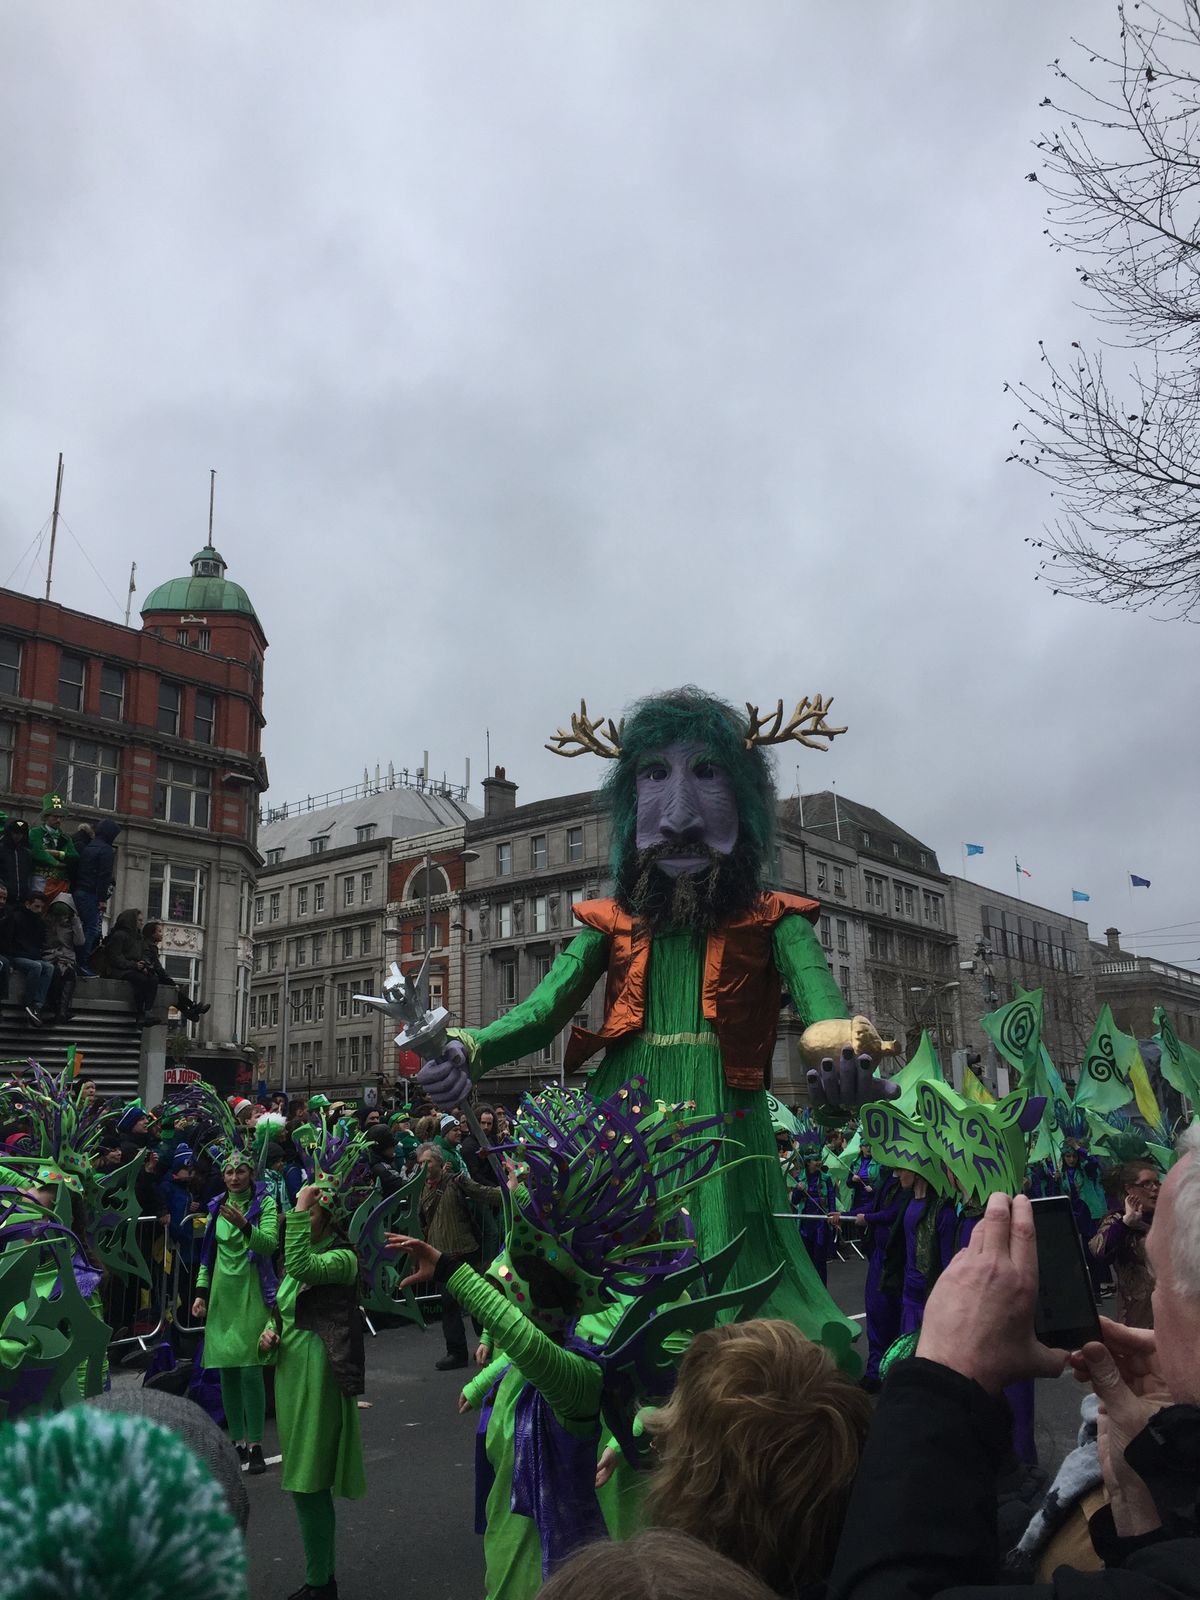 Saint Patrick's Day in Dublin!